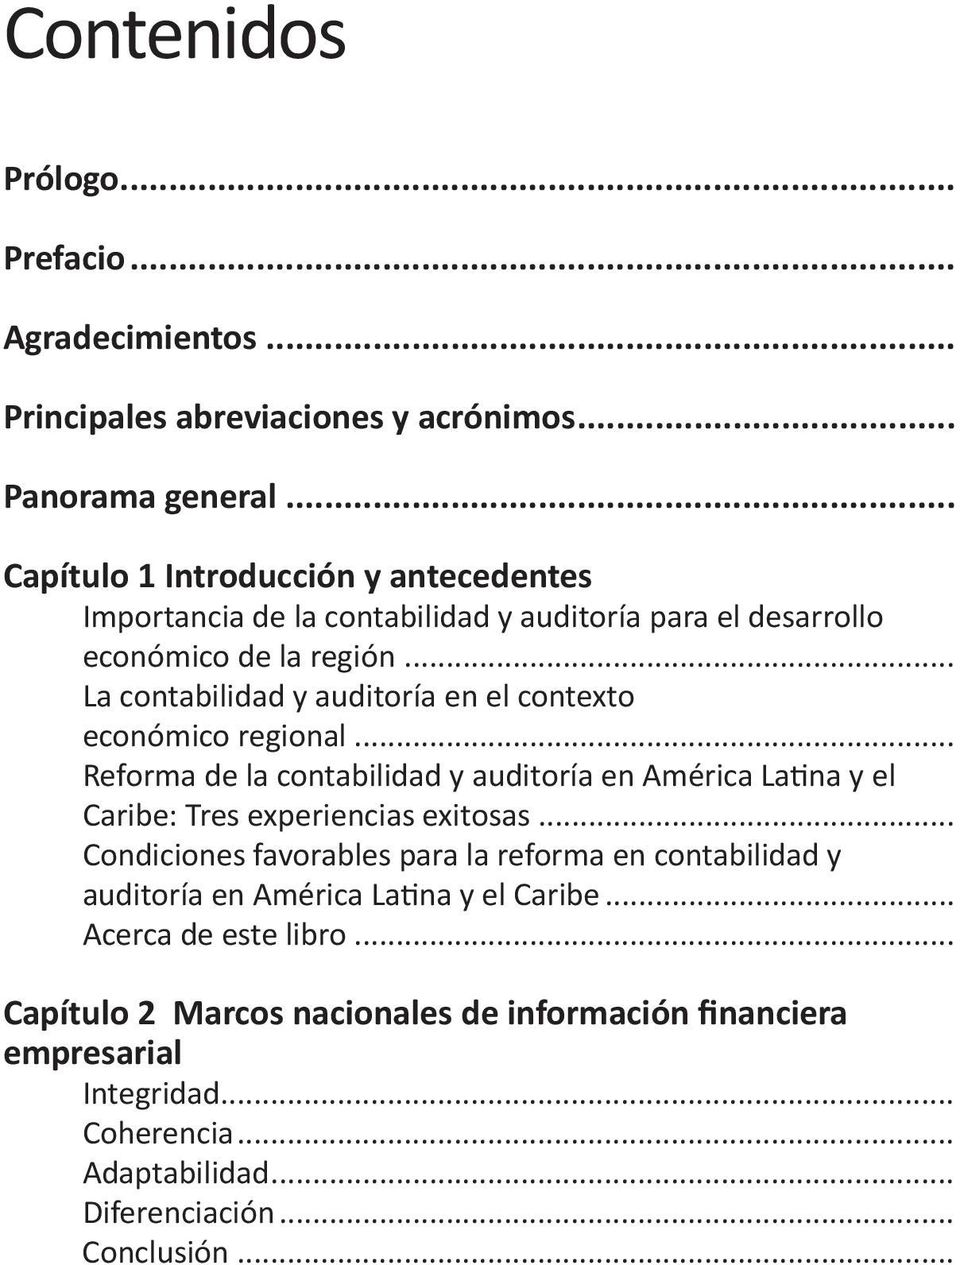 .. La contabilidad y auditoría en el contexto económico regional... Reforma de la contabilidad y auditoría en América Latina y el Caribe: Tres experiencias exitosas.